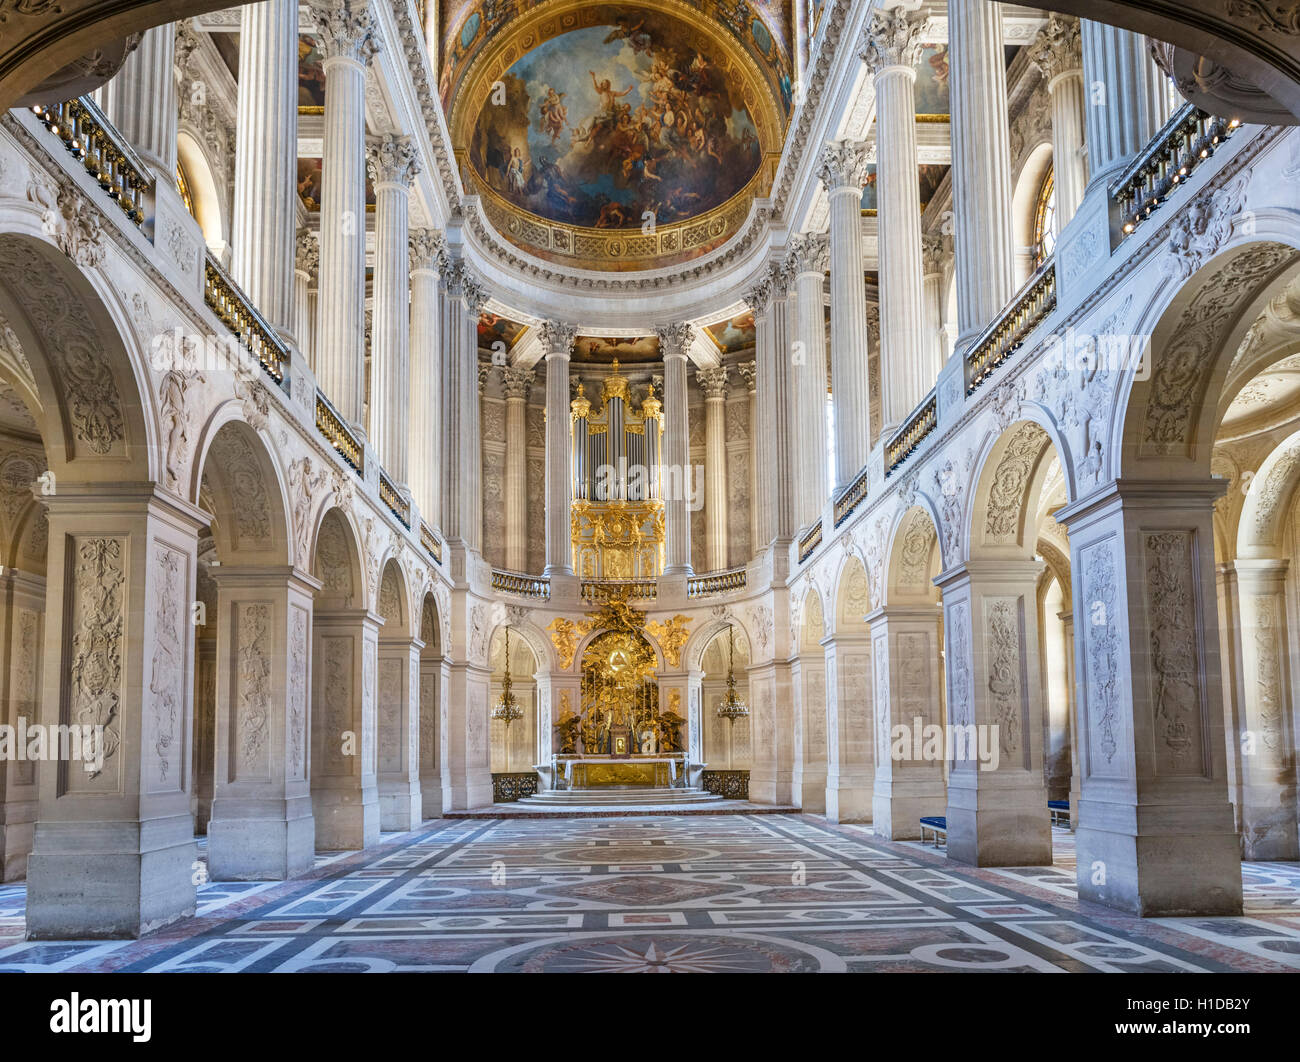 The Royal Chapel (Chapelle Royale), Chateau de Versailles (Palace of Versailles), near Paris, France Stock Photo